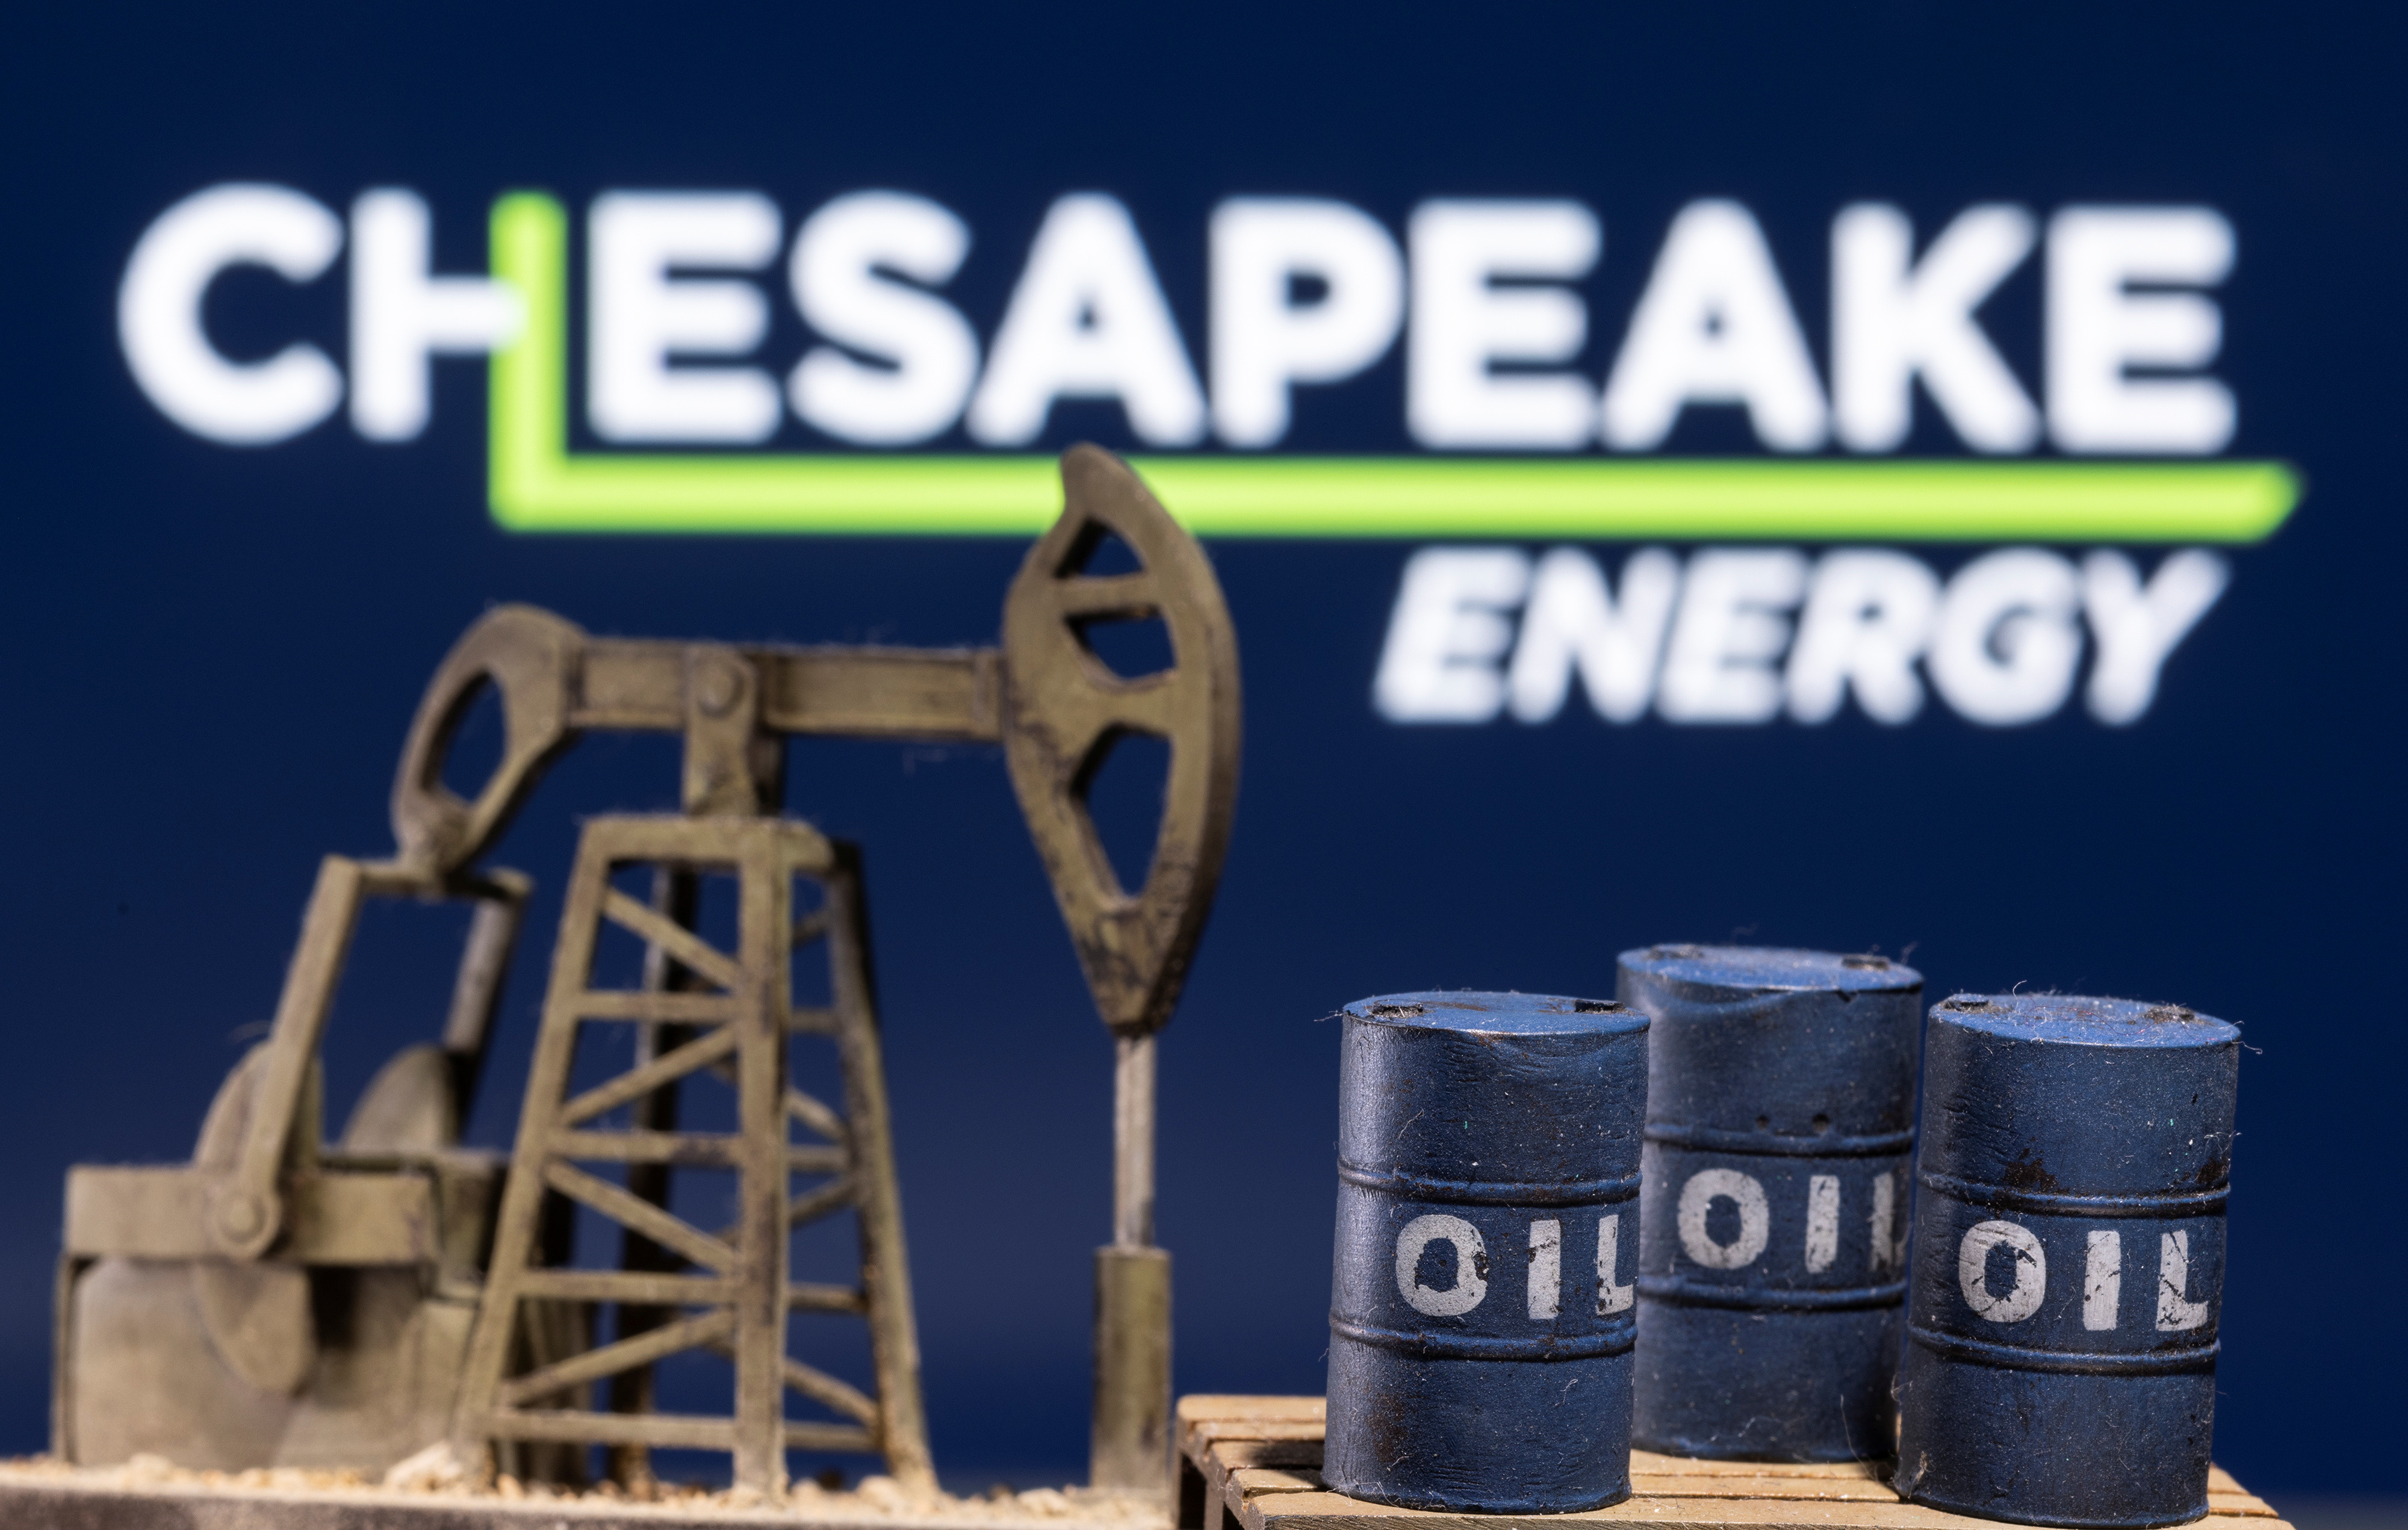 米天然ガス大手チェサピーク、人員削減開始　石油資産の売却完了